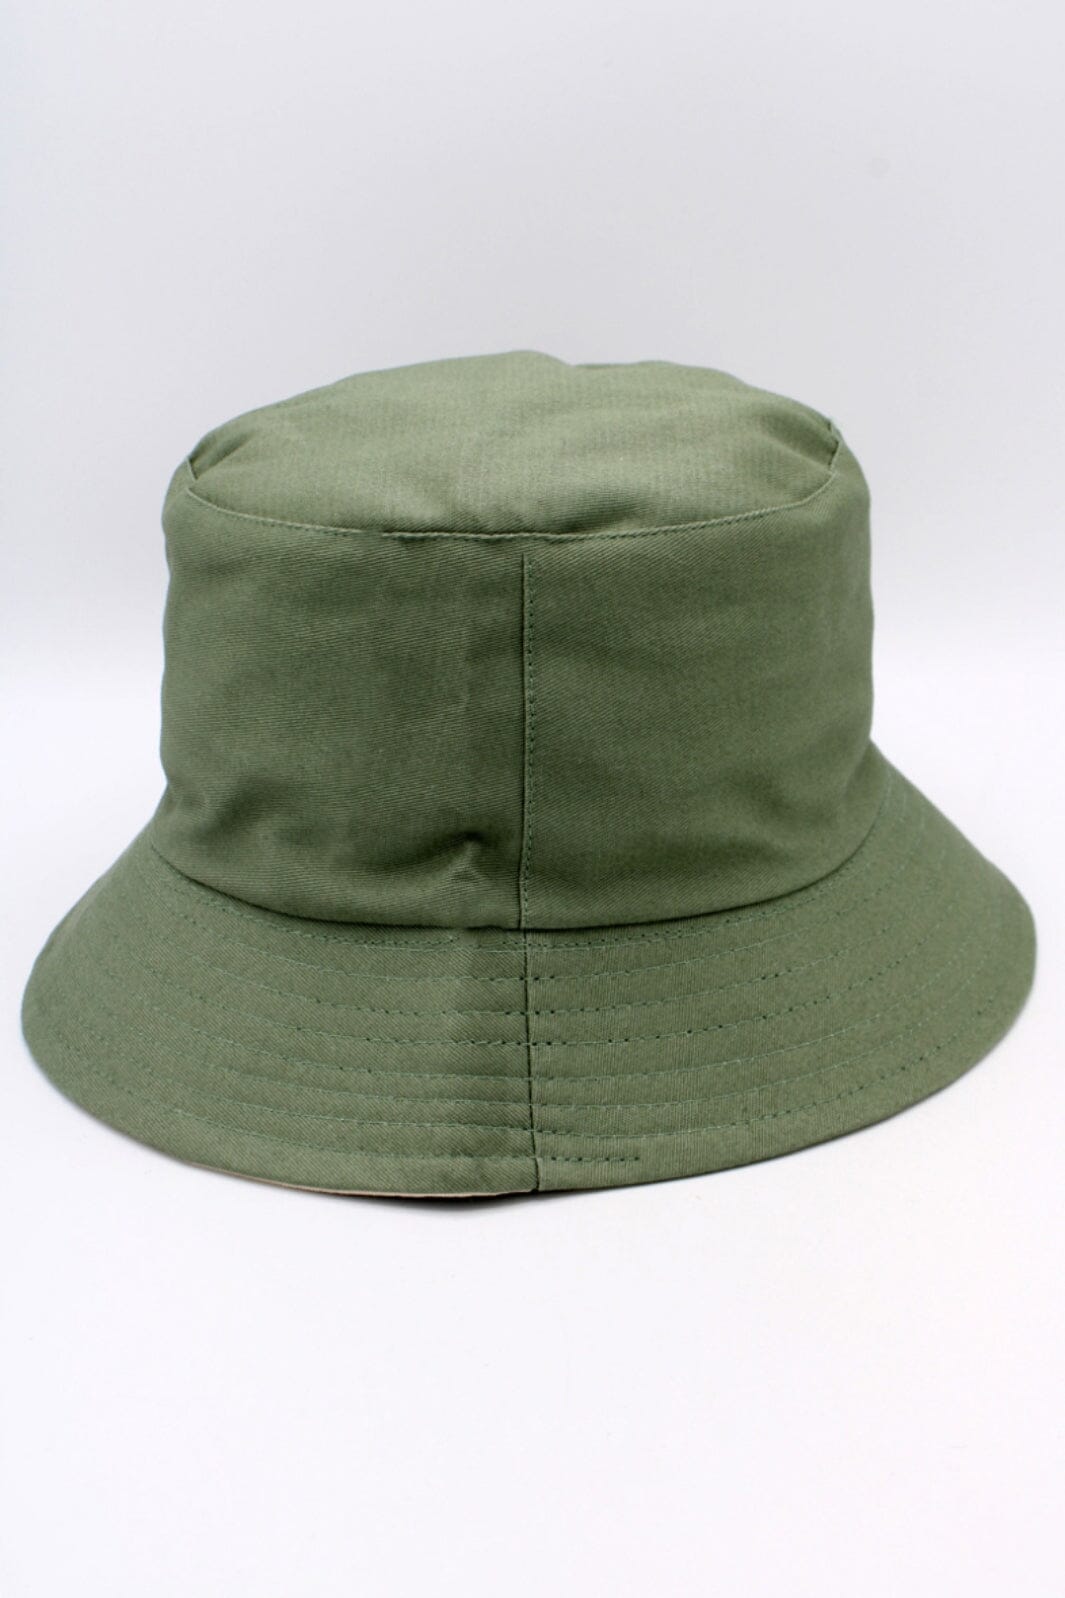 Anobel Copenhagen - Reversible Two-Tone Cotton Bucket Hat 12577 - Olive Hatte 